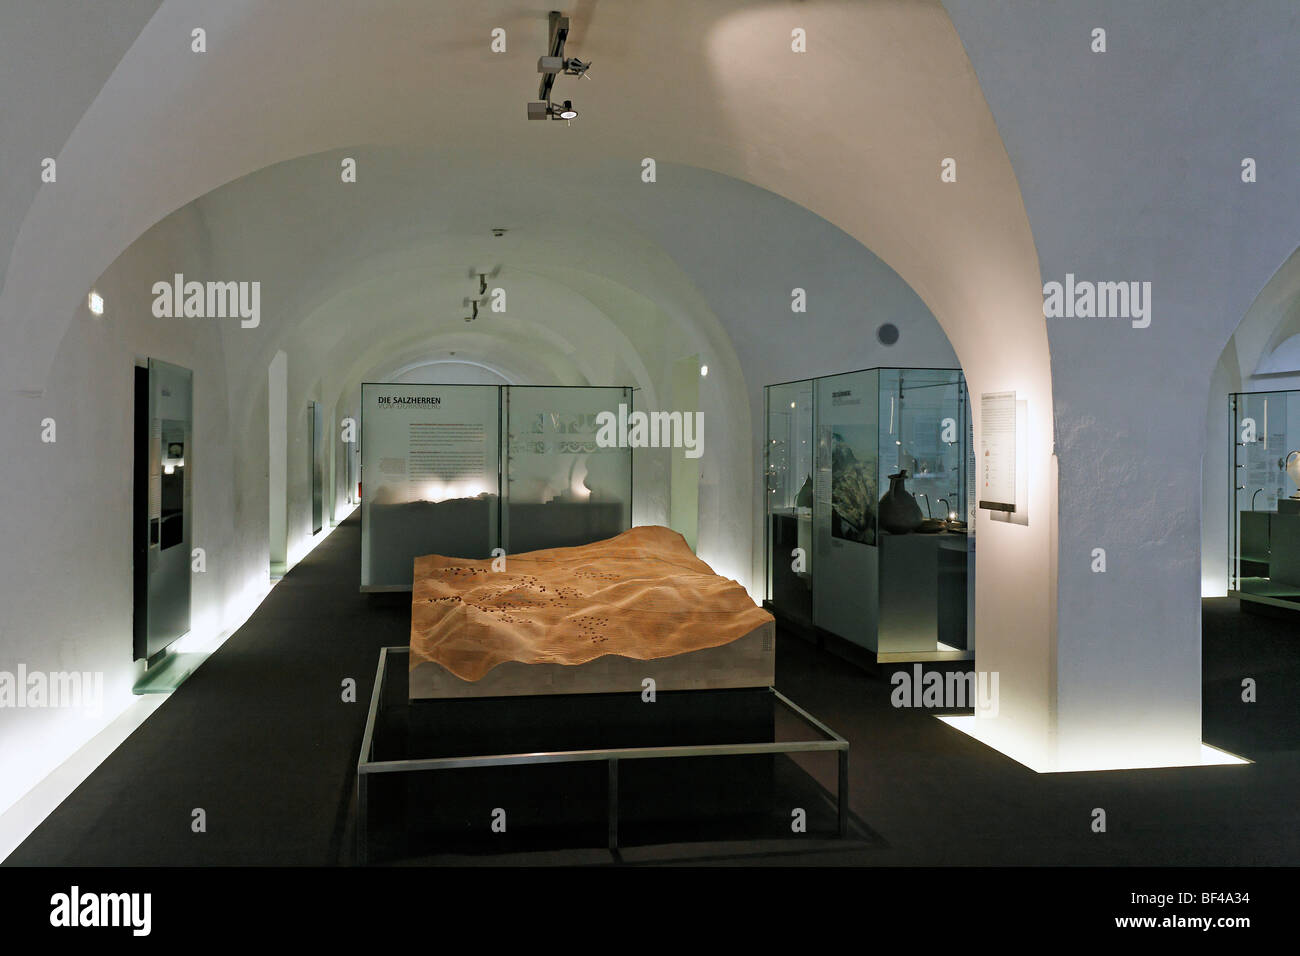 Keltenmuseum Celtic museum, exhibition in the old vault, Hallein, Salzburger Land region, Salzburg, Austria, Europe Stock Photo